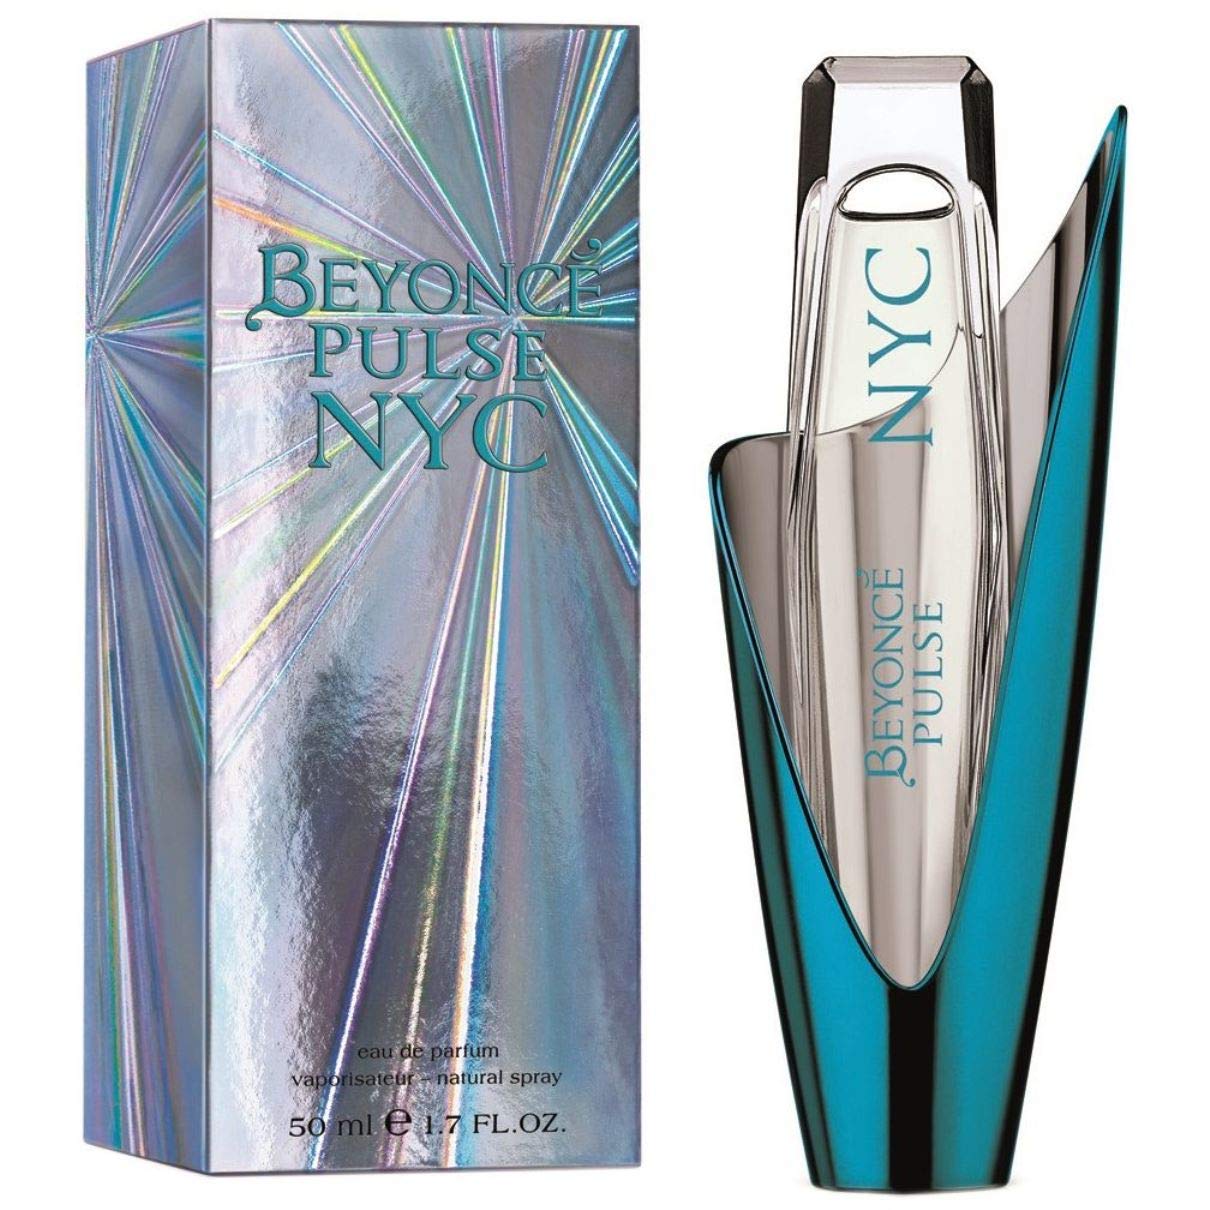 Beyoncé Pulse NYC Eau de Parfum Spray for Women